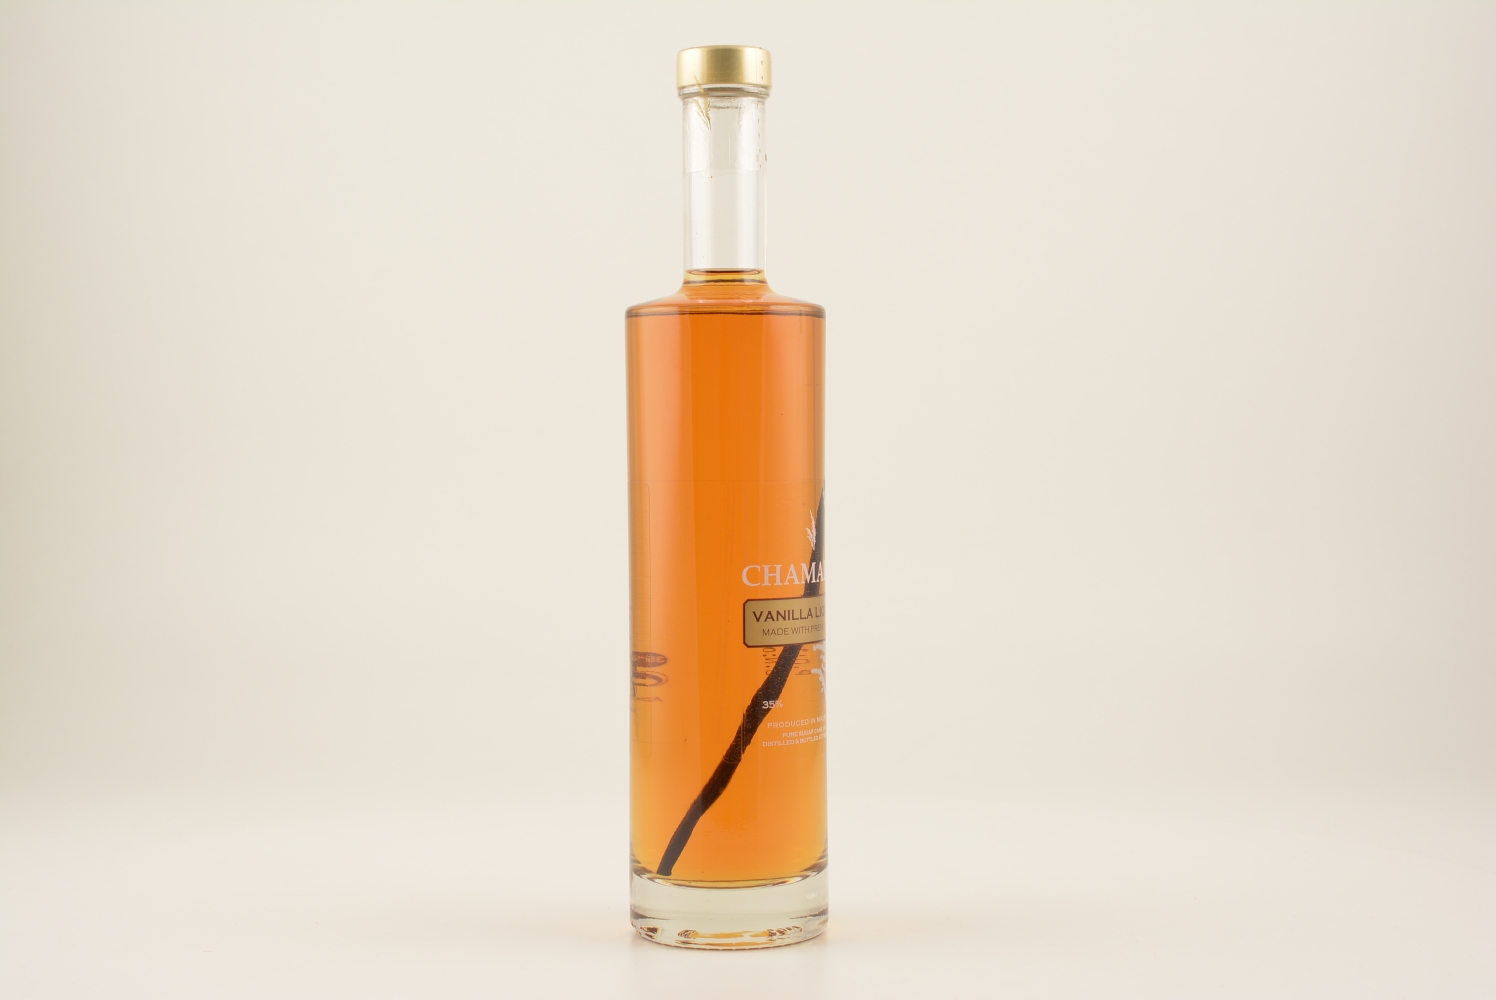 Chamarel Vanilla Rum-Liqueur 35% 0,5l